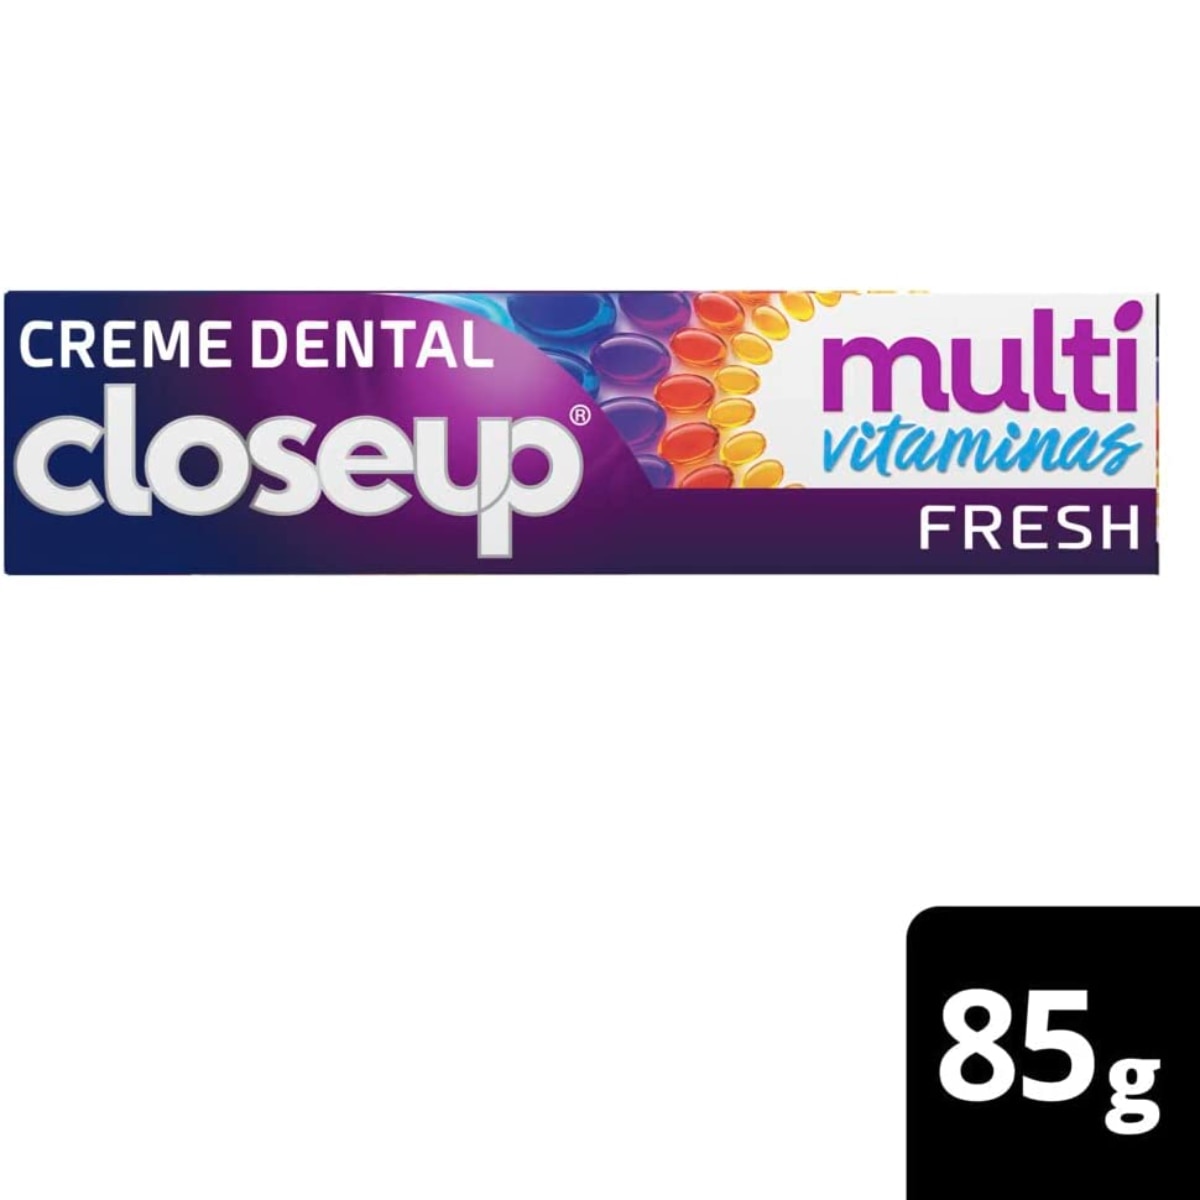 Creme Dental Close Up Multi Vitaminas + 12 Beneficios 85g